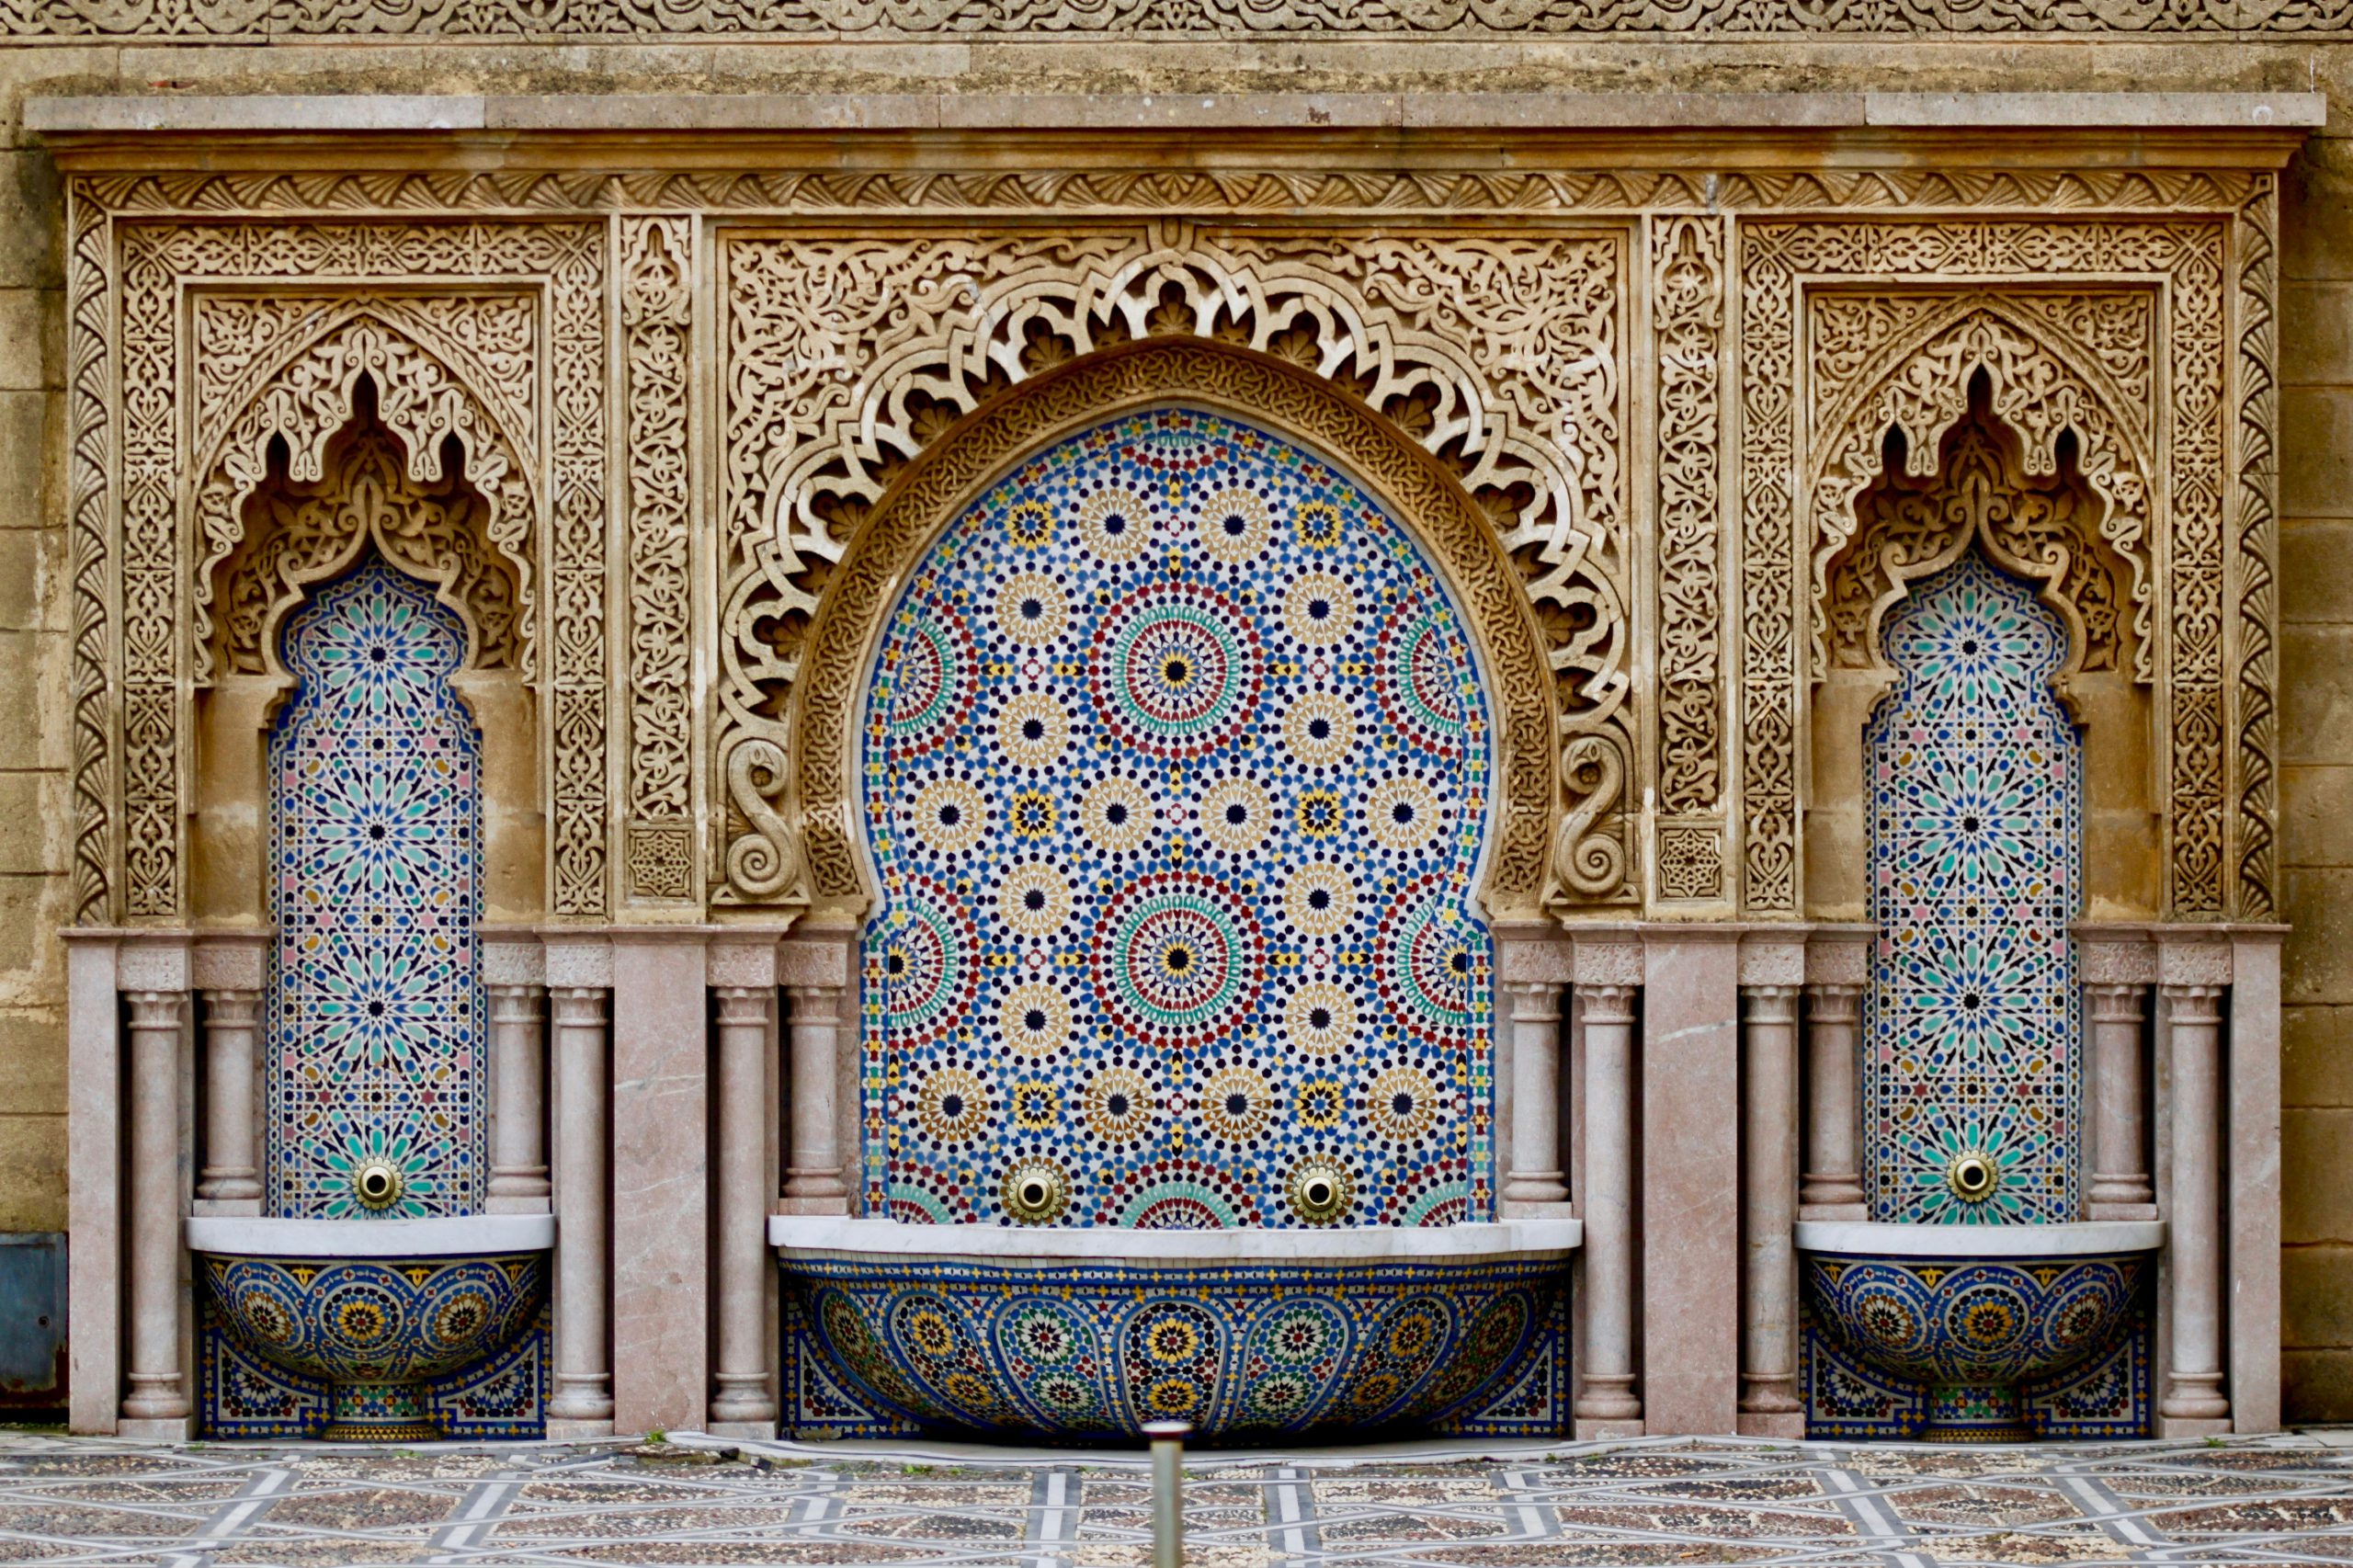 Aladdin's Fountain in Morocco